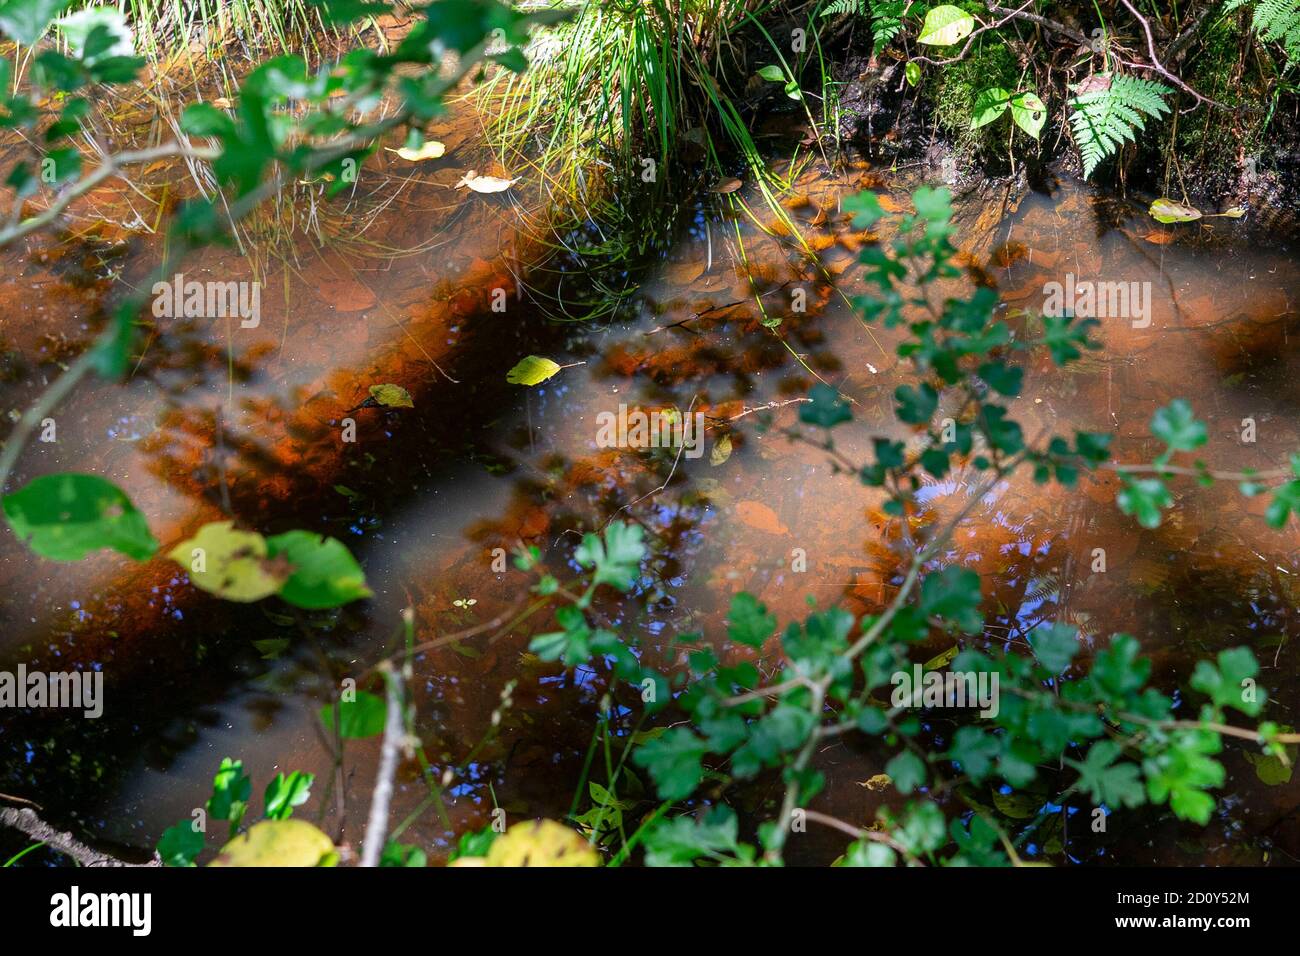 Profondo nella foresta vergine Foto Stock